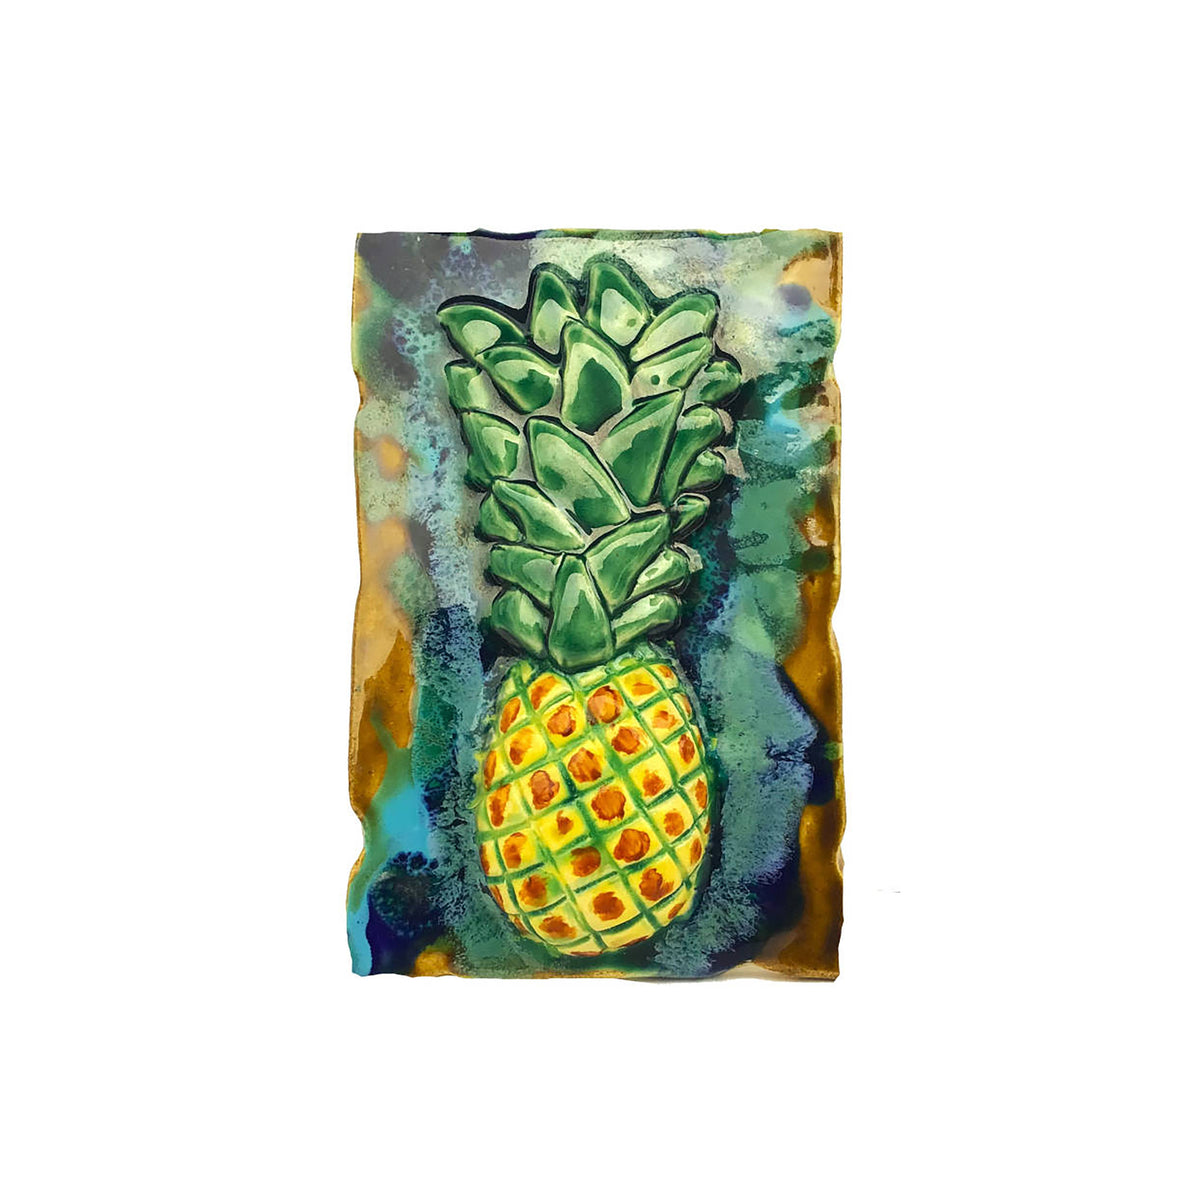 Ceramic pineapple wall hanging art, Kitchen Backsplash pineapple design, pineapple bathroom shower tiles, pineapple wall tiles, tropical home decor pineapple, beach house art,